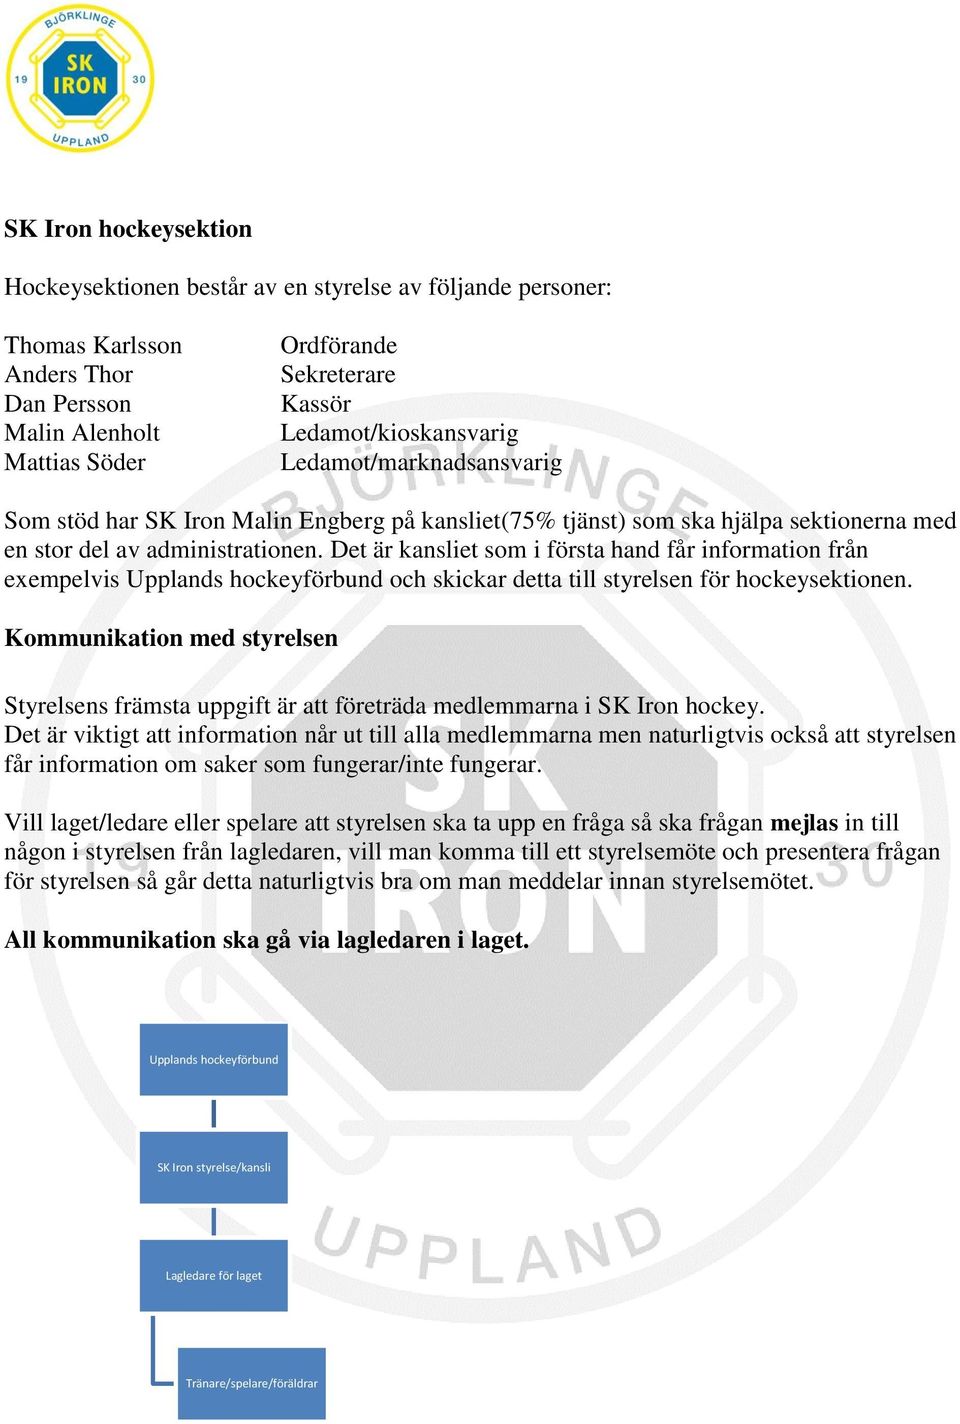 Det är kansliet som i första hand får information från exempelvis Upplands hockeyförbund och skickar detta till styrelsen för hockeysektionen.